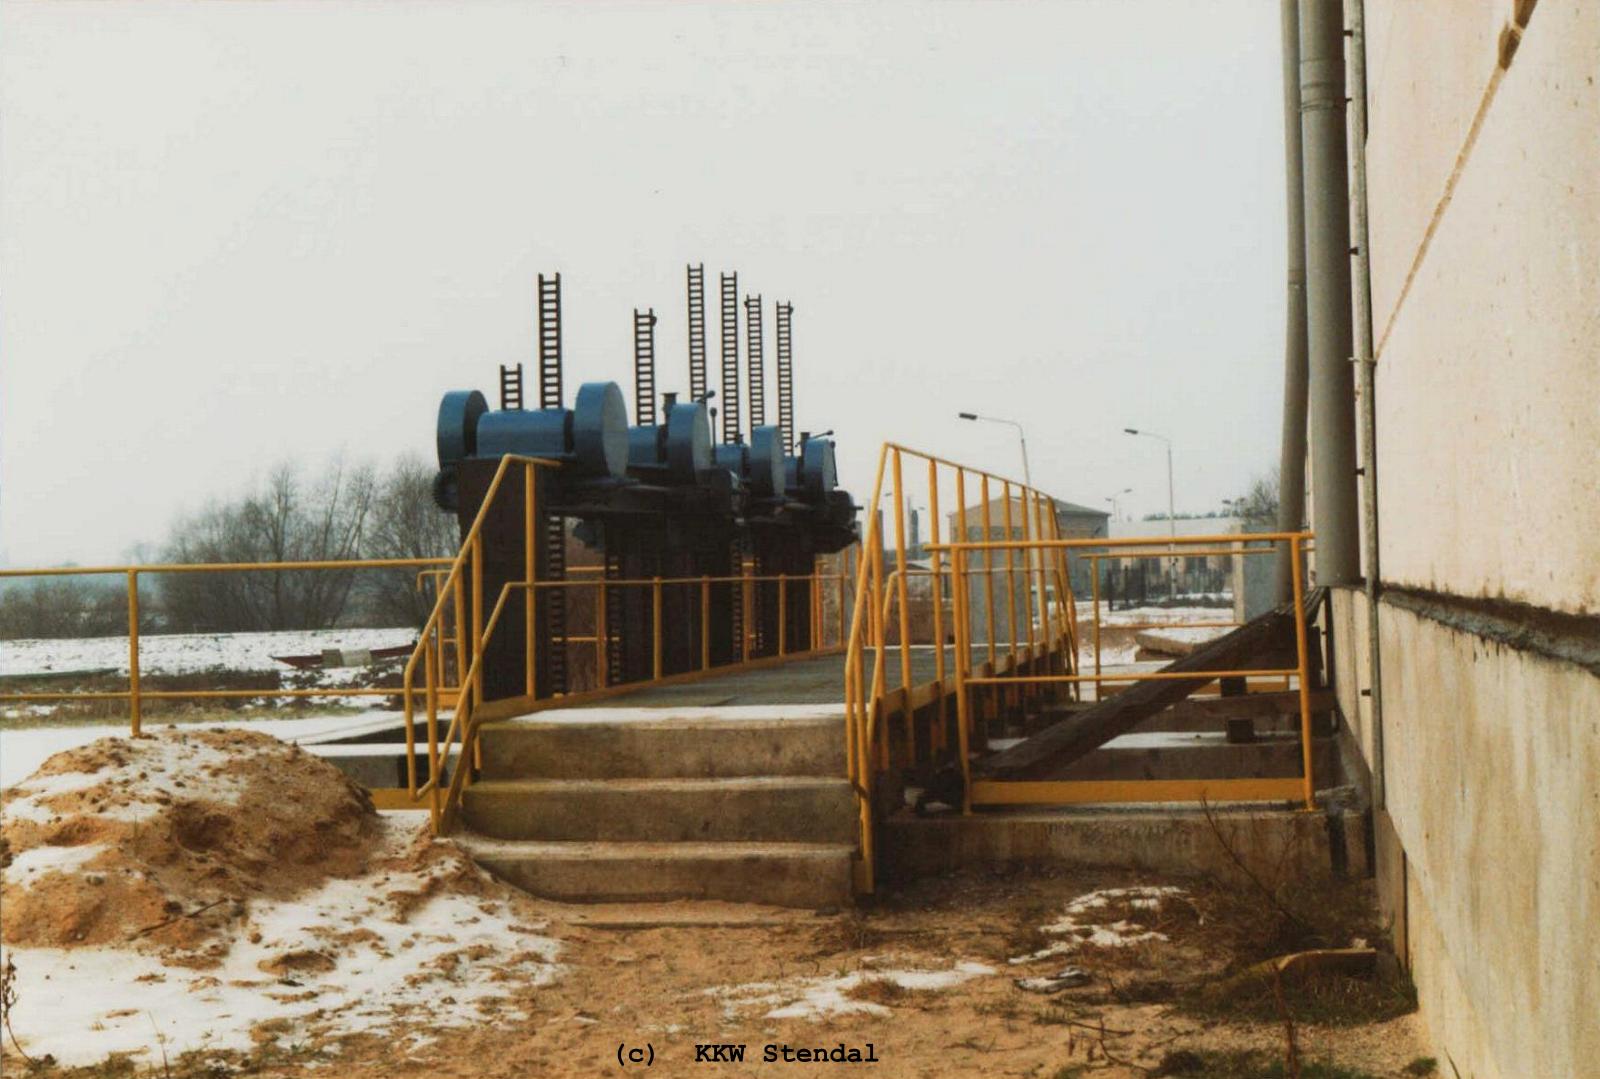  KKW Stendal, Baustelle 1990, Rohwasserversorgung, Einlaufkanal 